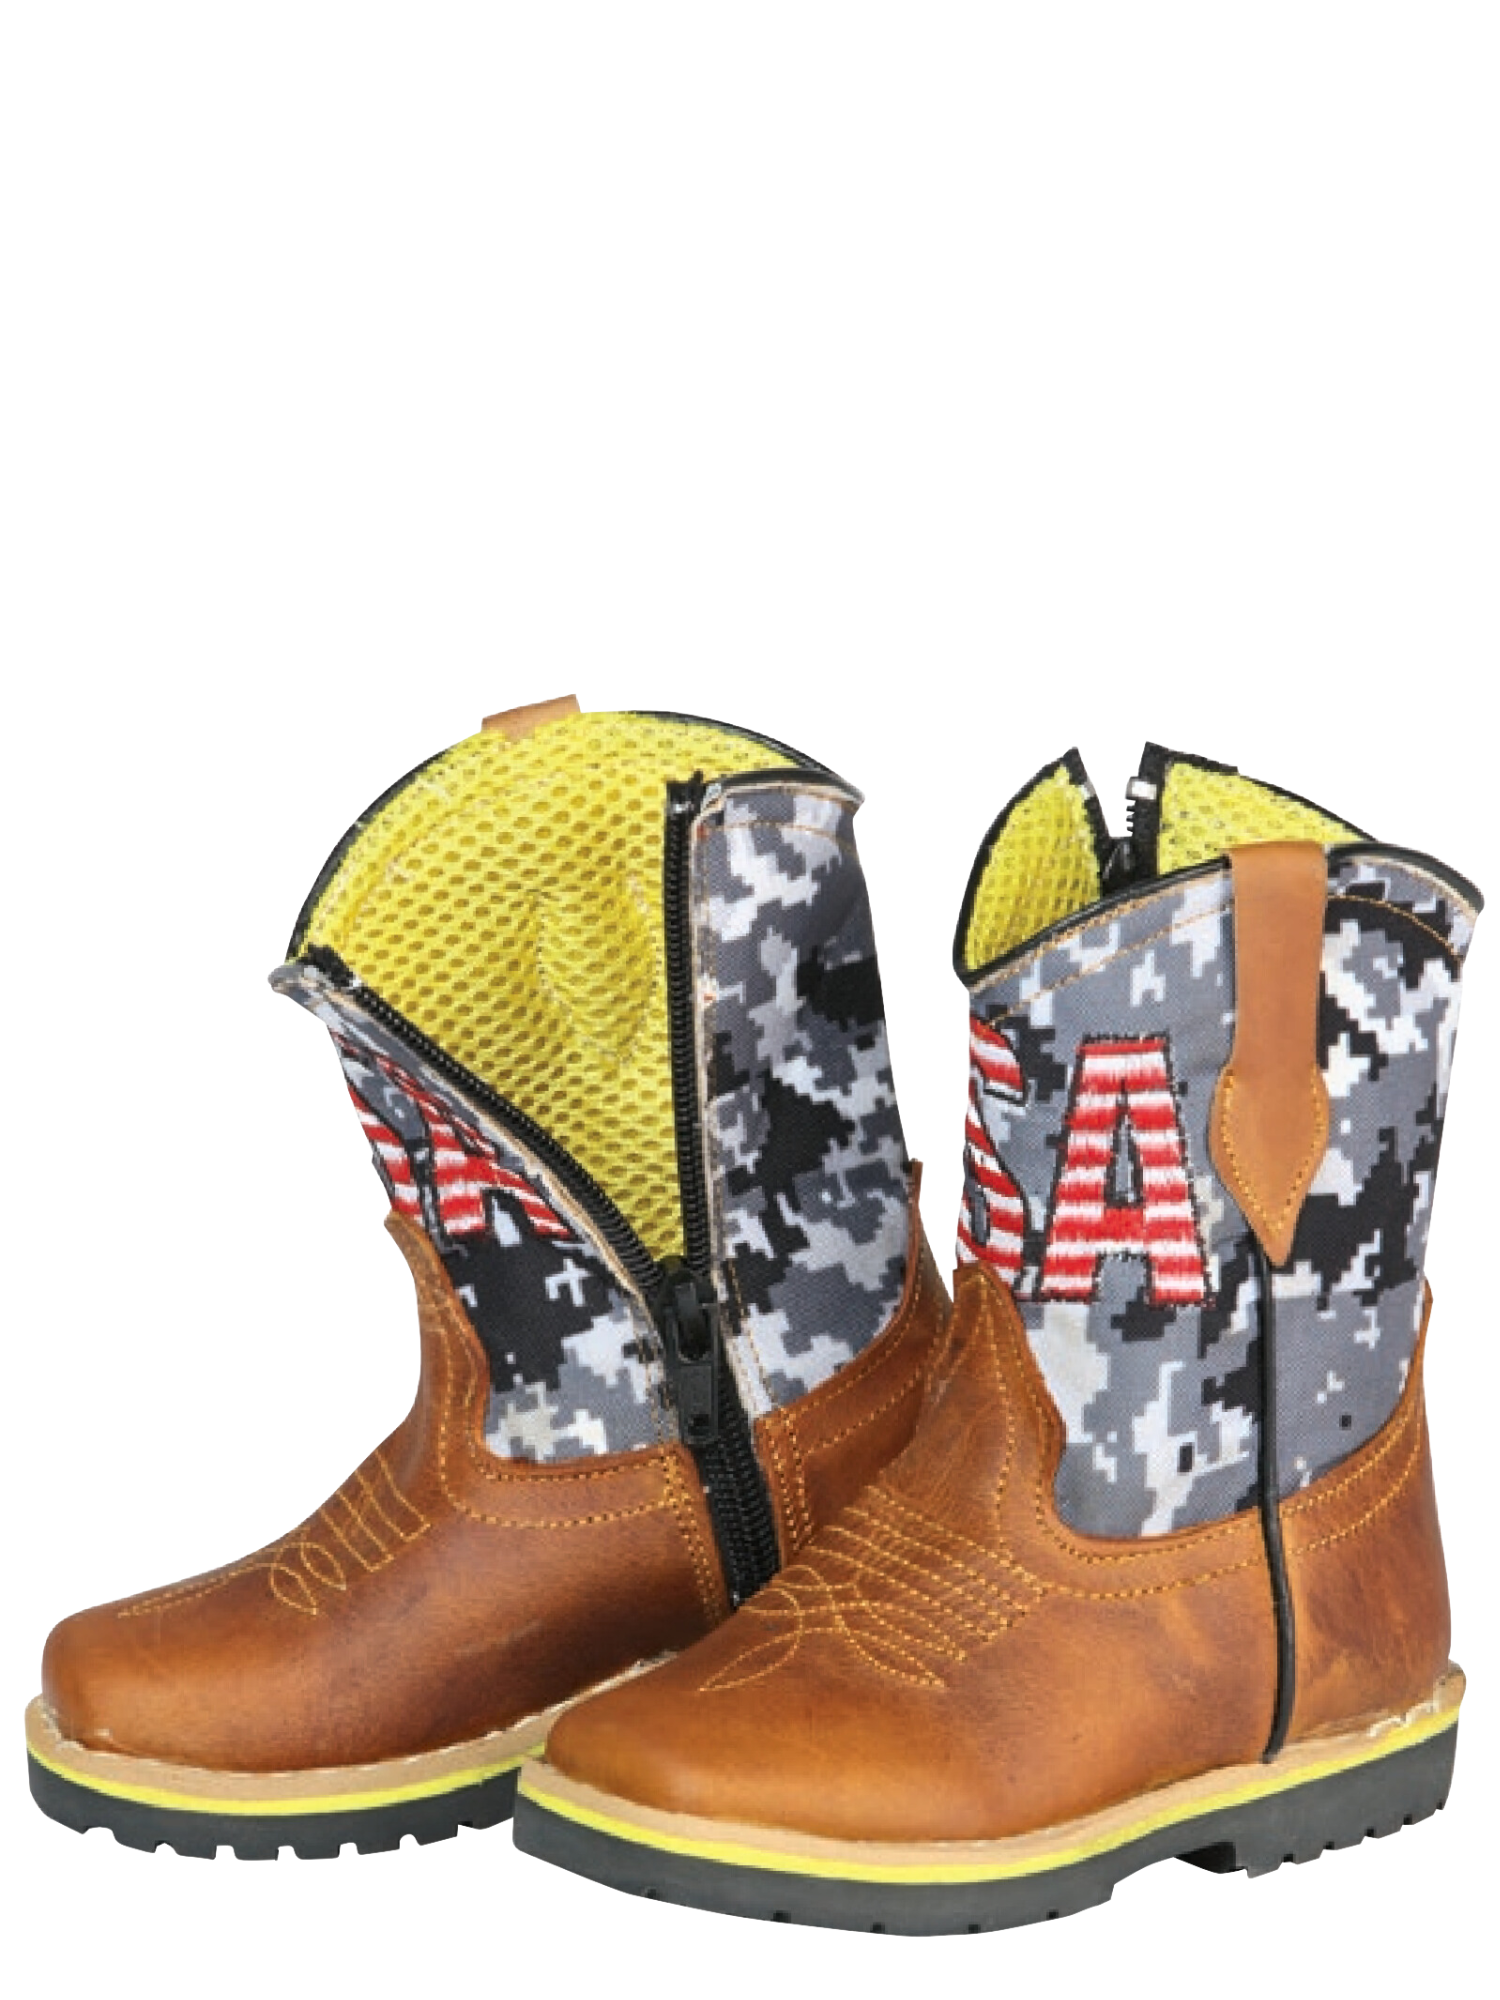 Kids - Botas Vaqueras Rodeo Clasicas de Piel Genuina para Bebes 'Jar Boots' - ID: 126573 Cowboy Boots Jar Boots 